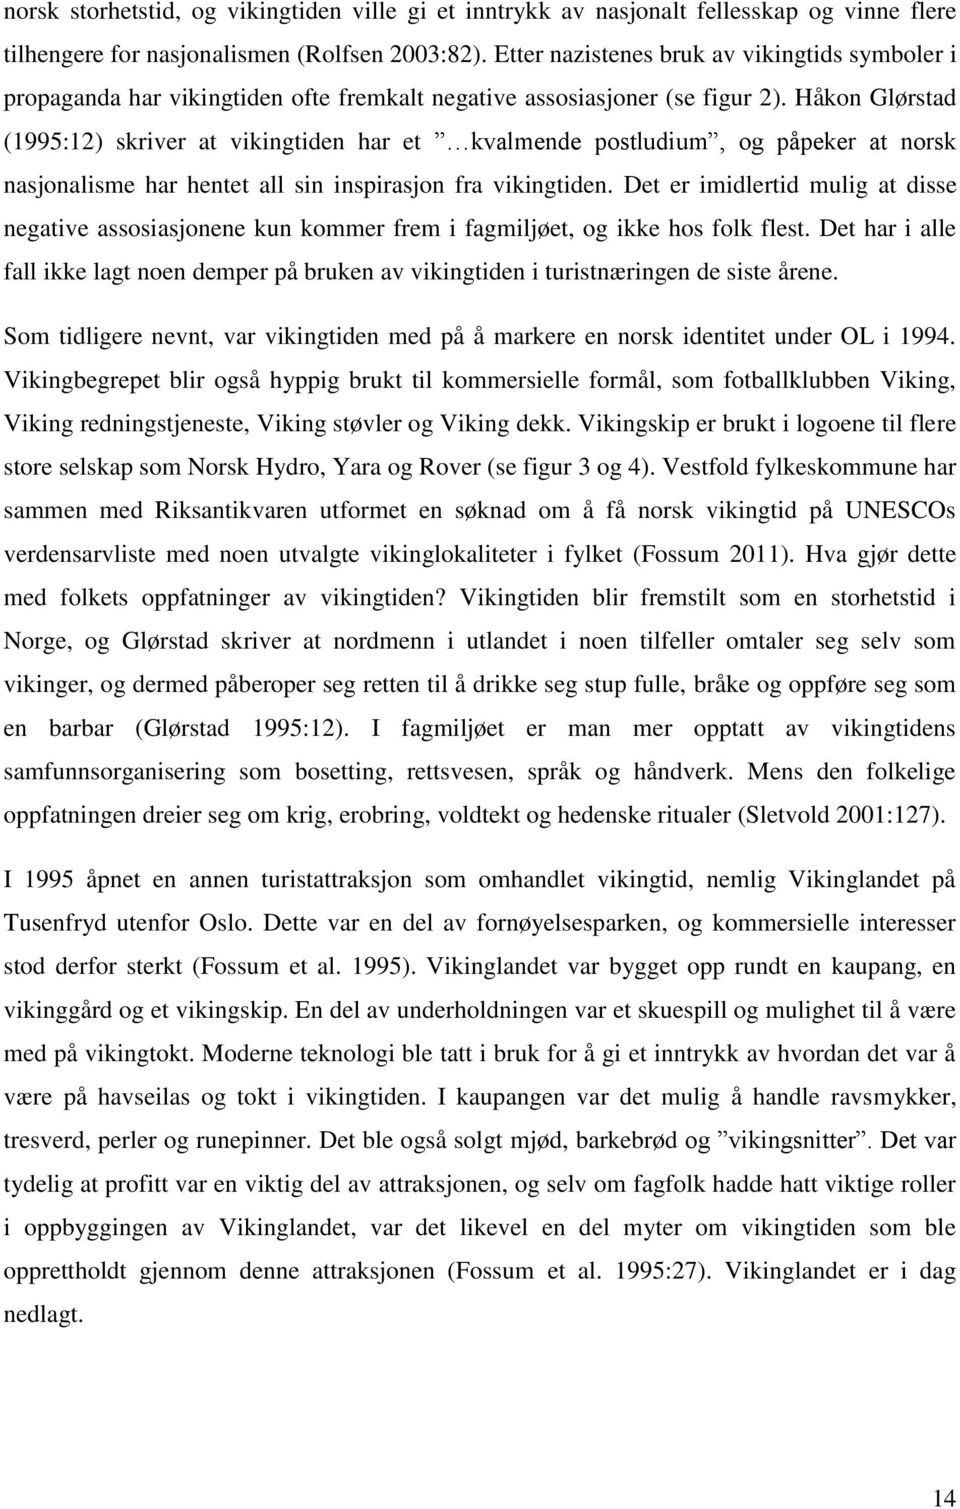 Håkon Glørstad (1995:12) skriver at vikingtiden har et kvalmende postludium, og påpeker at norsk nasjonalisme har hentet all sin inspirasjon fra vikingtiden.